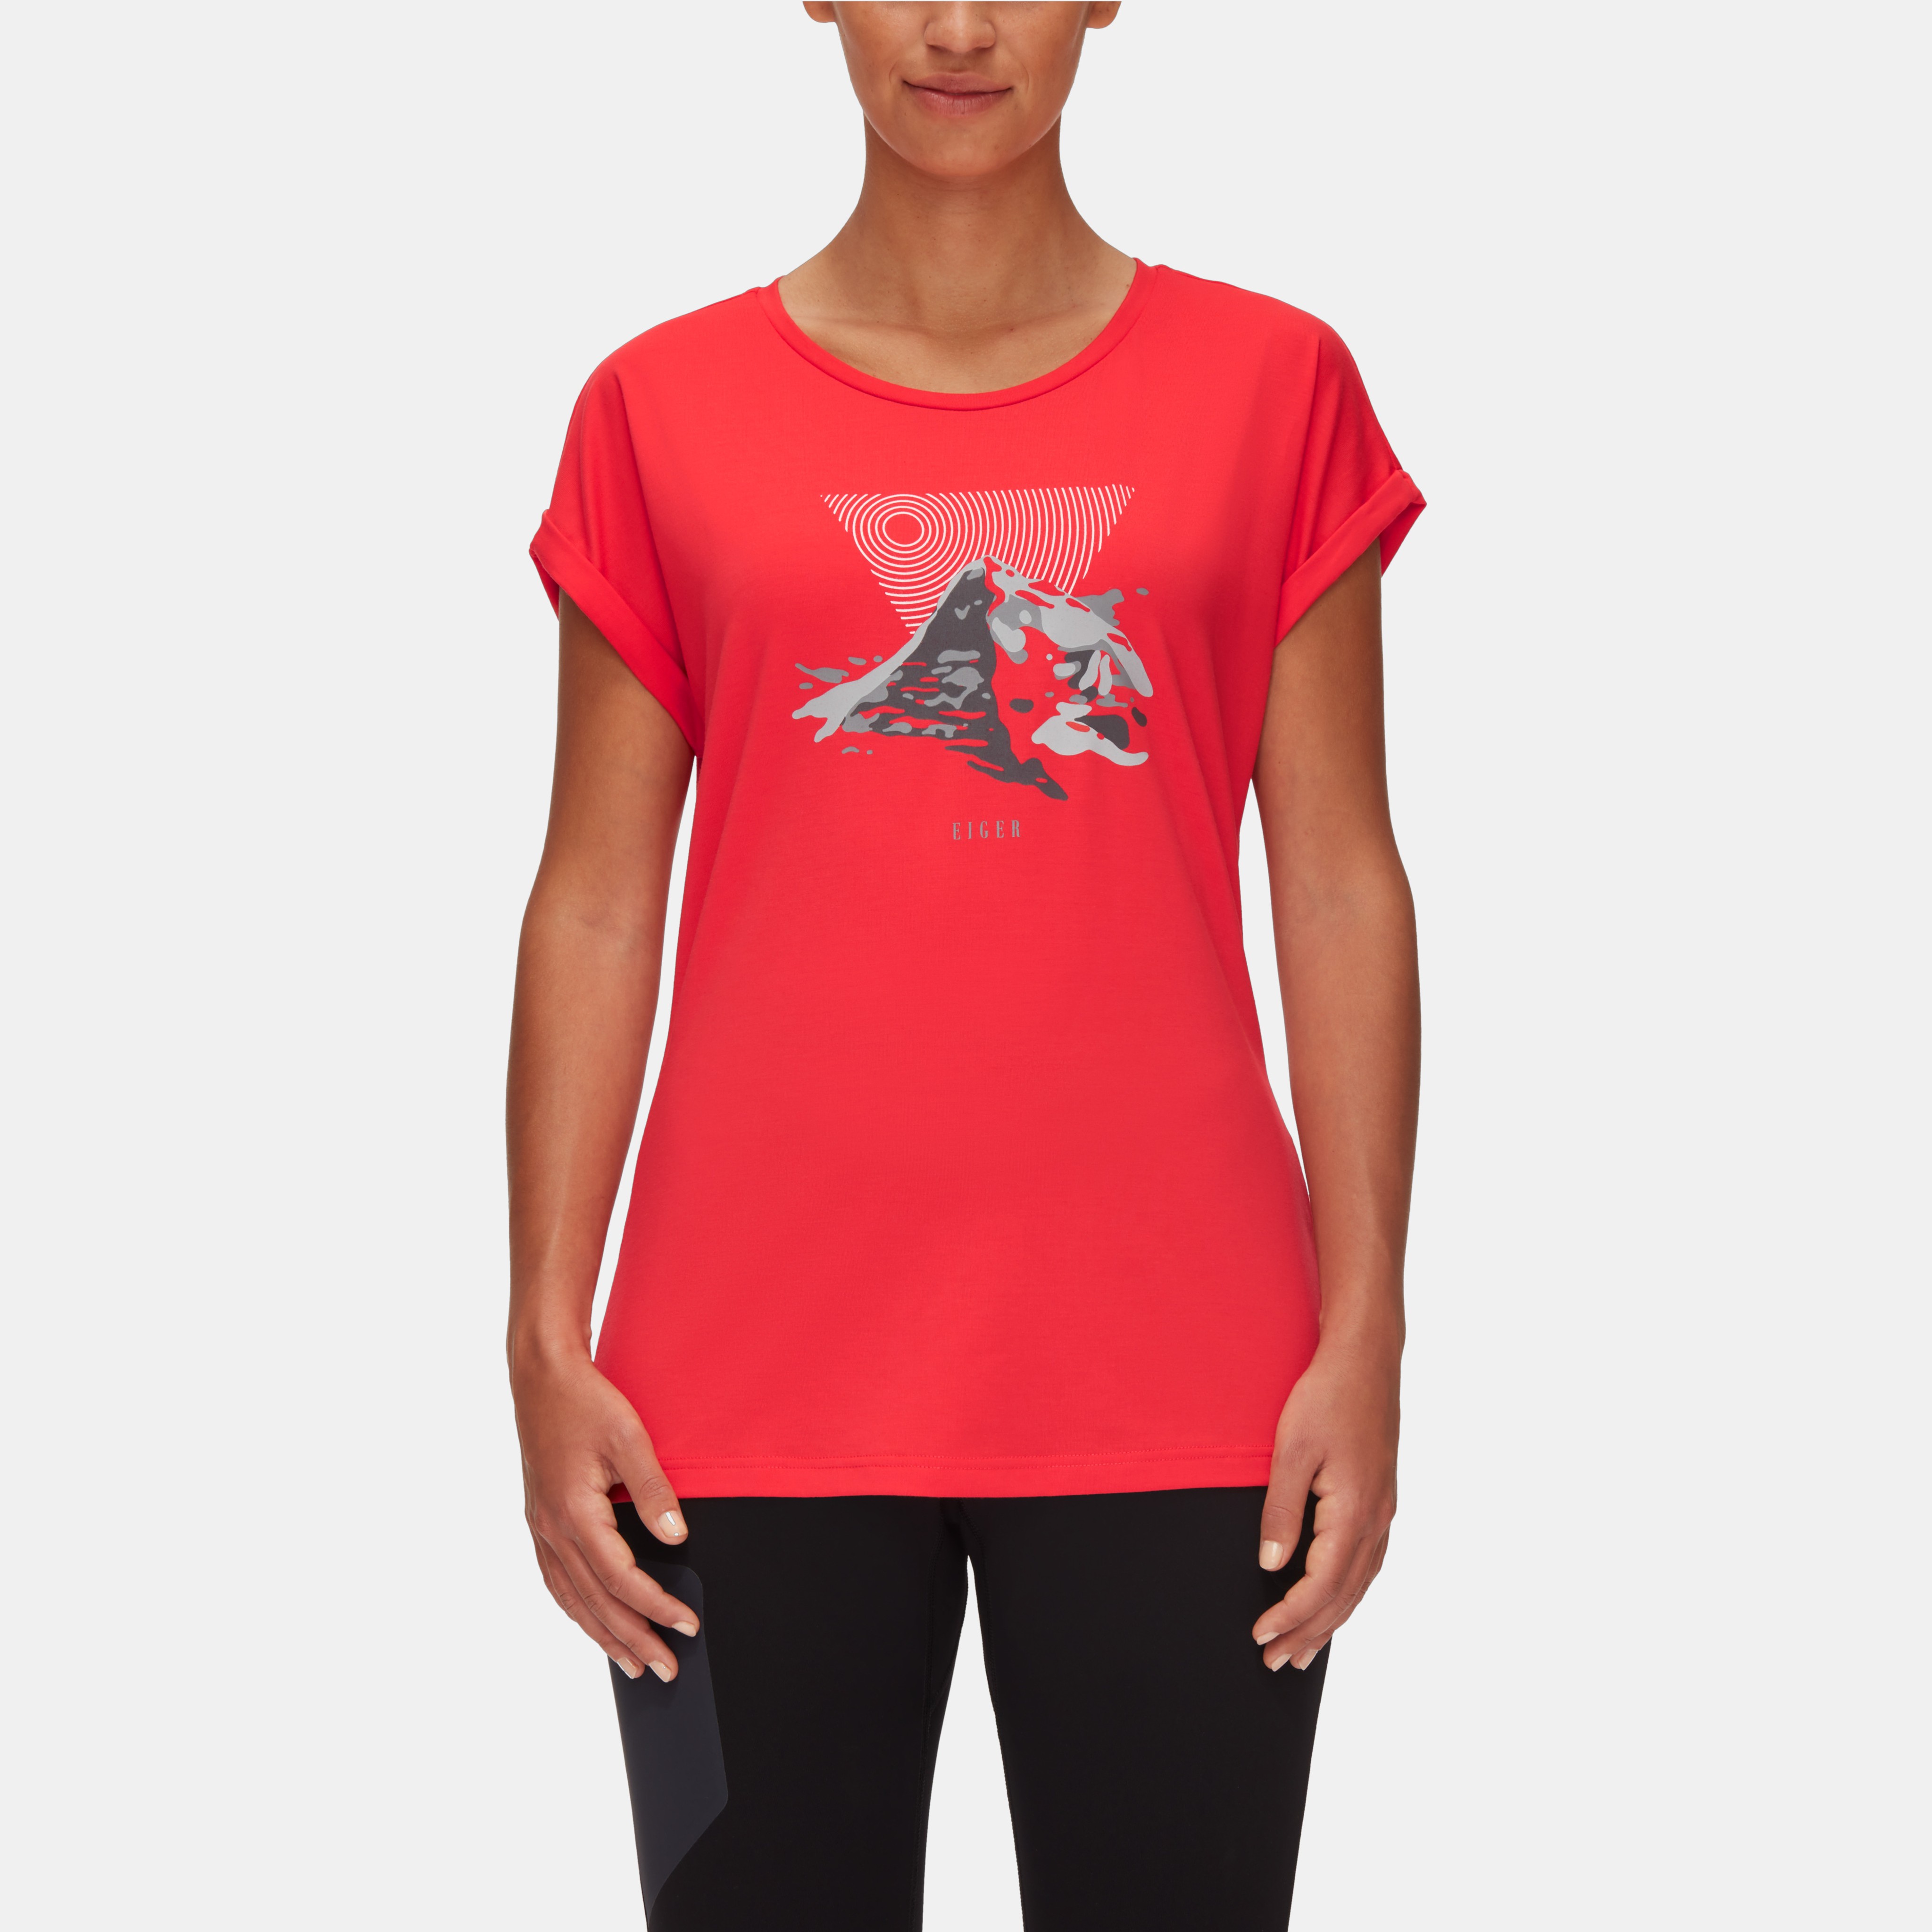 Mountain T-Shirt Women product image